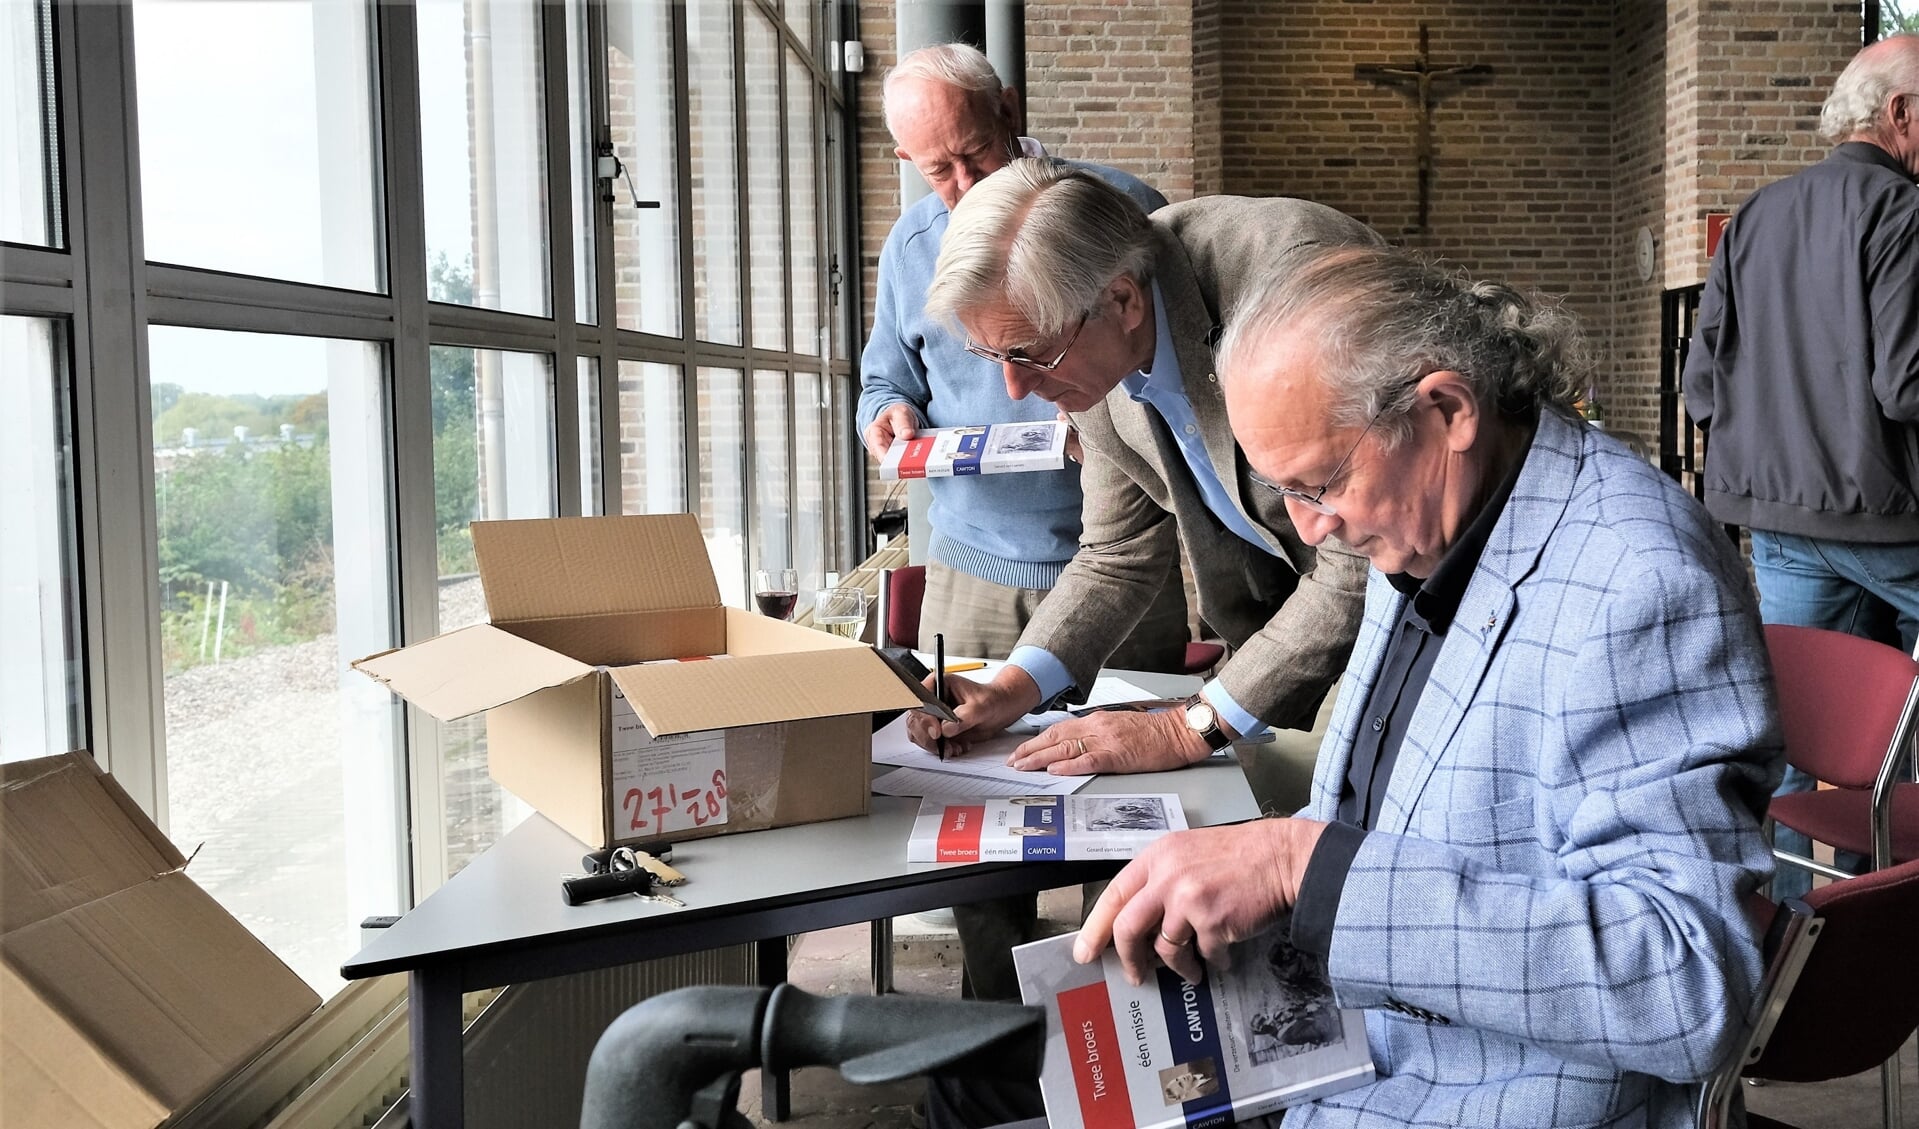 Auteur Gerard van Loenen (r) bezig met het signeren van de boeken kort na de presentatie in de Gedachteniskerk in Rhenen.  